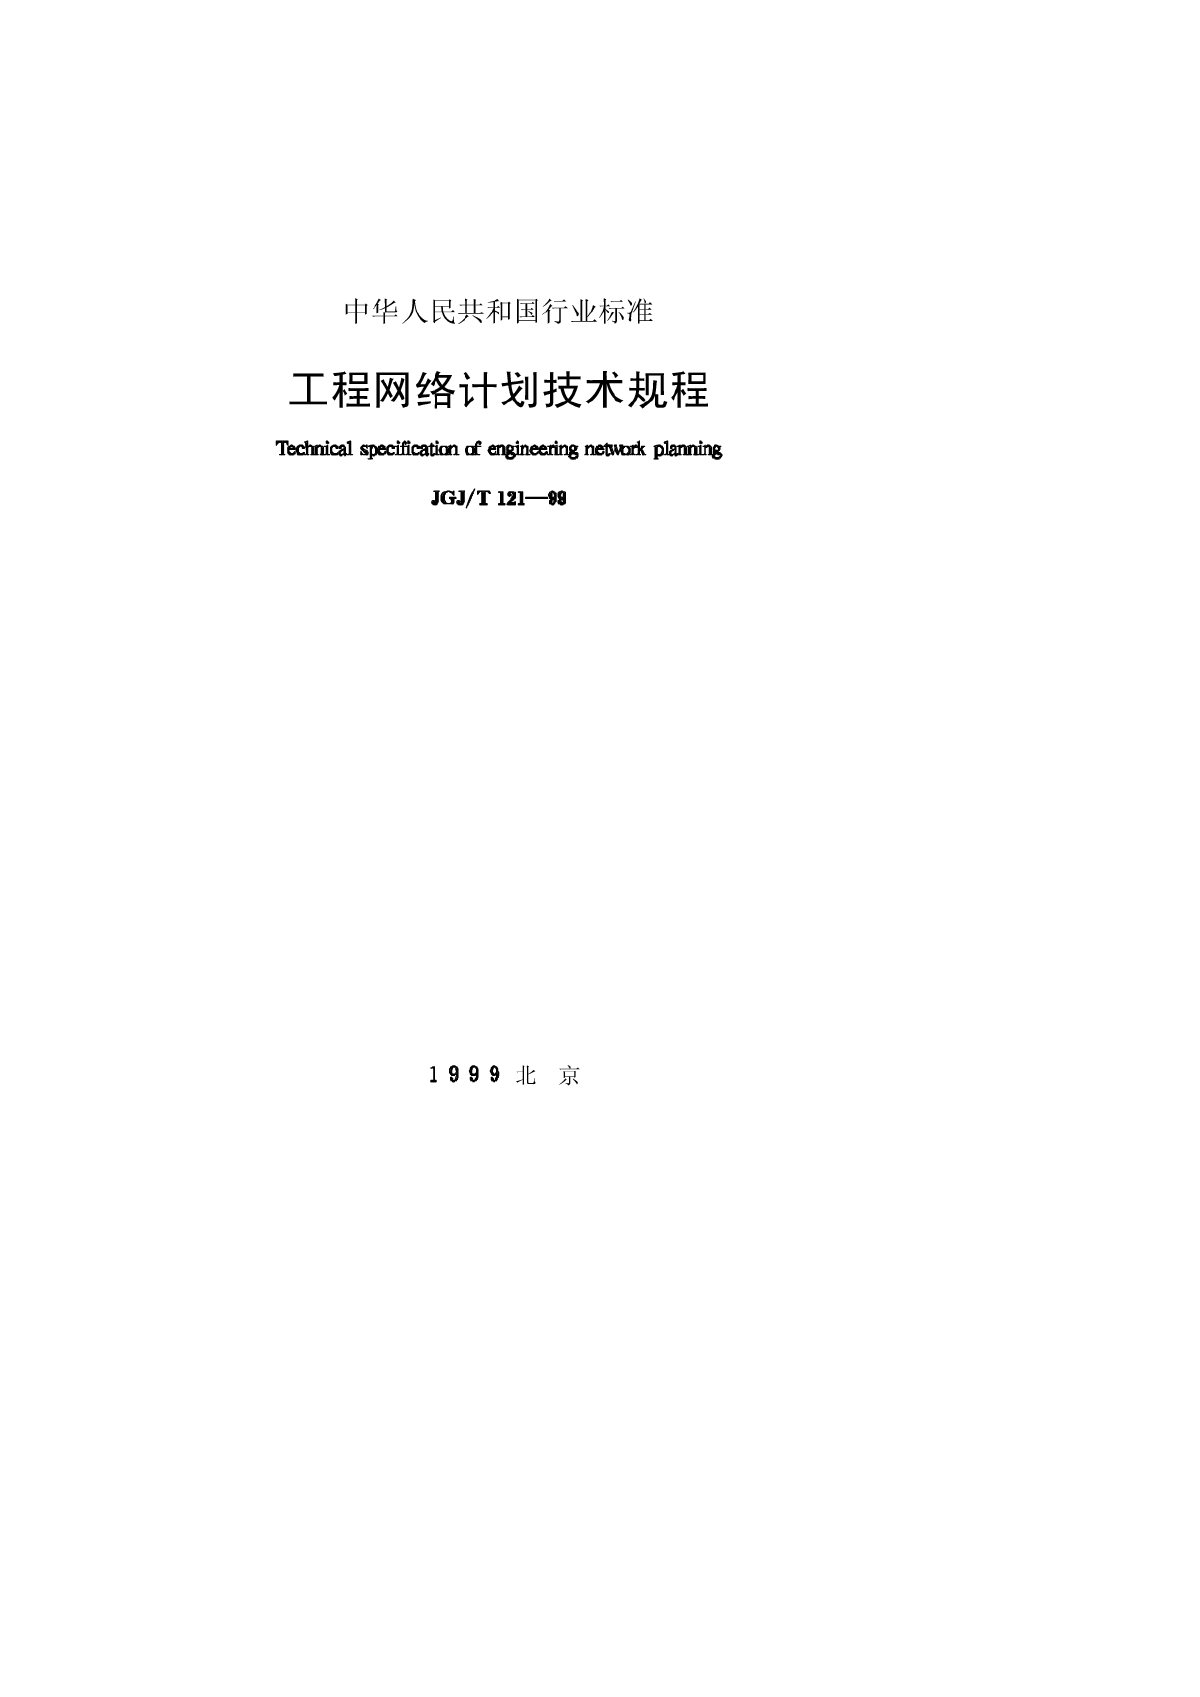 JGJT121-1999工程网络计划技术规程